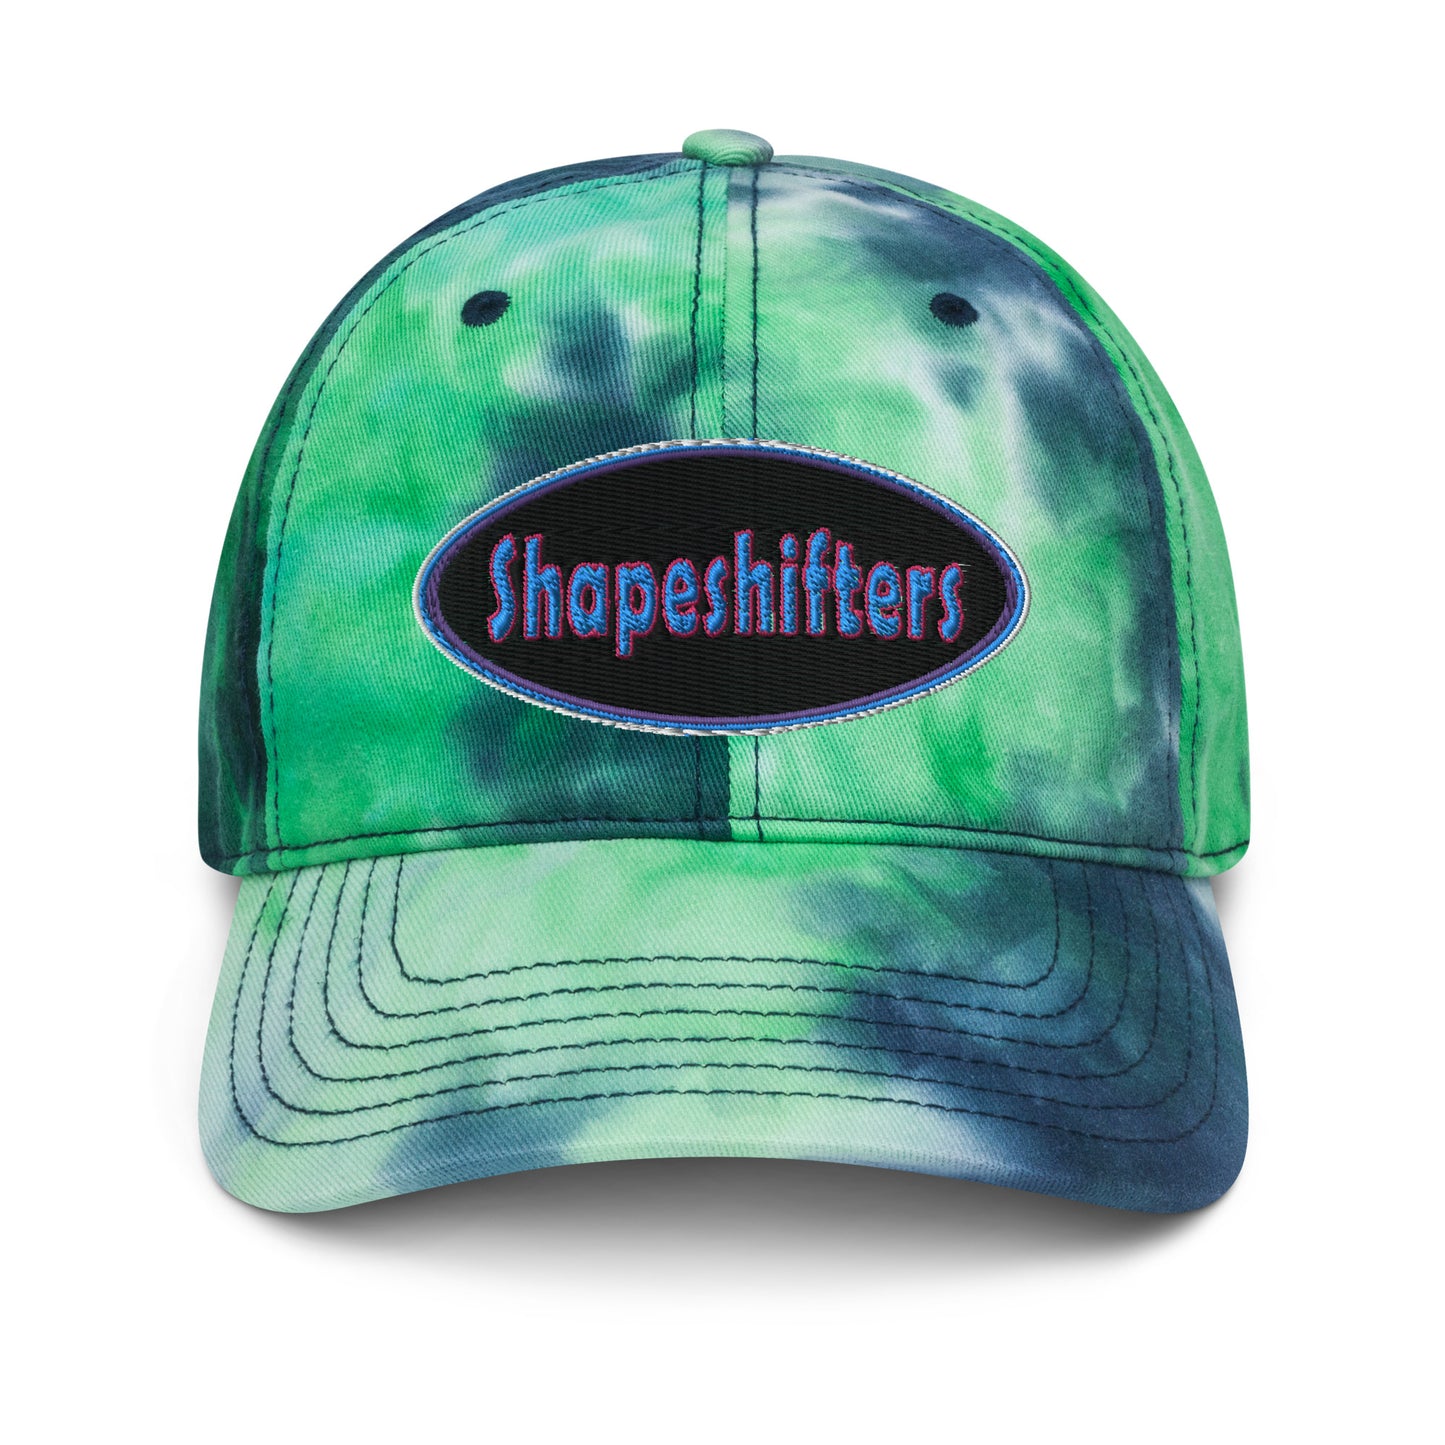 Shapeshifters Tie dye hat